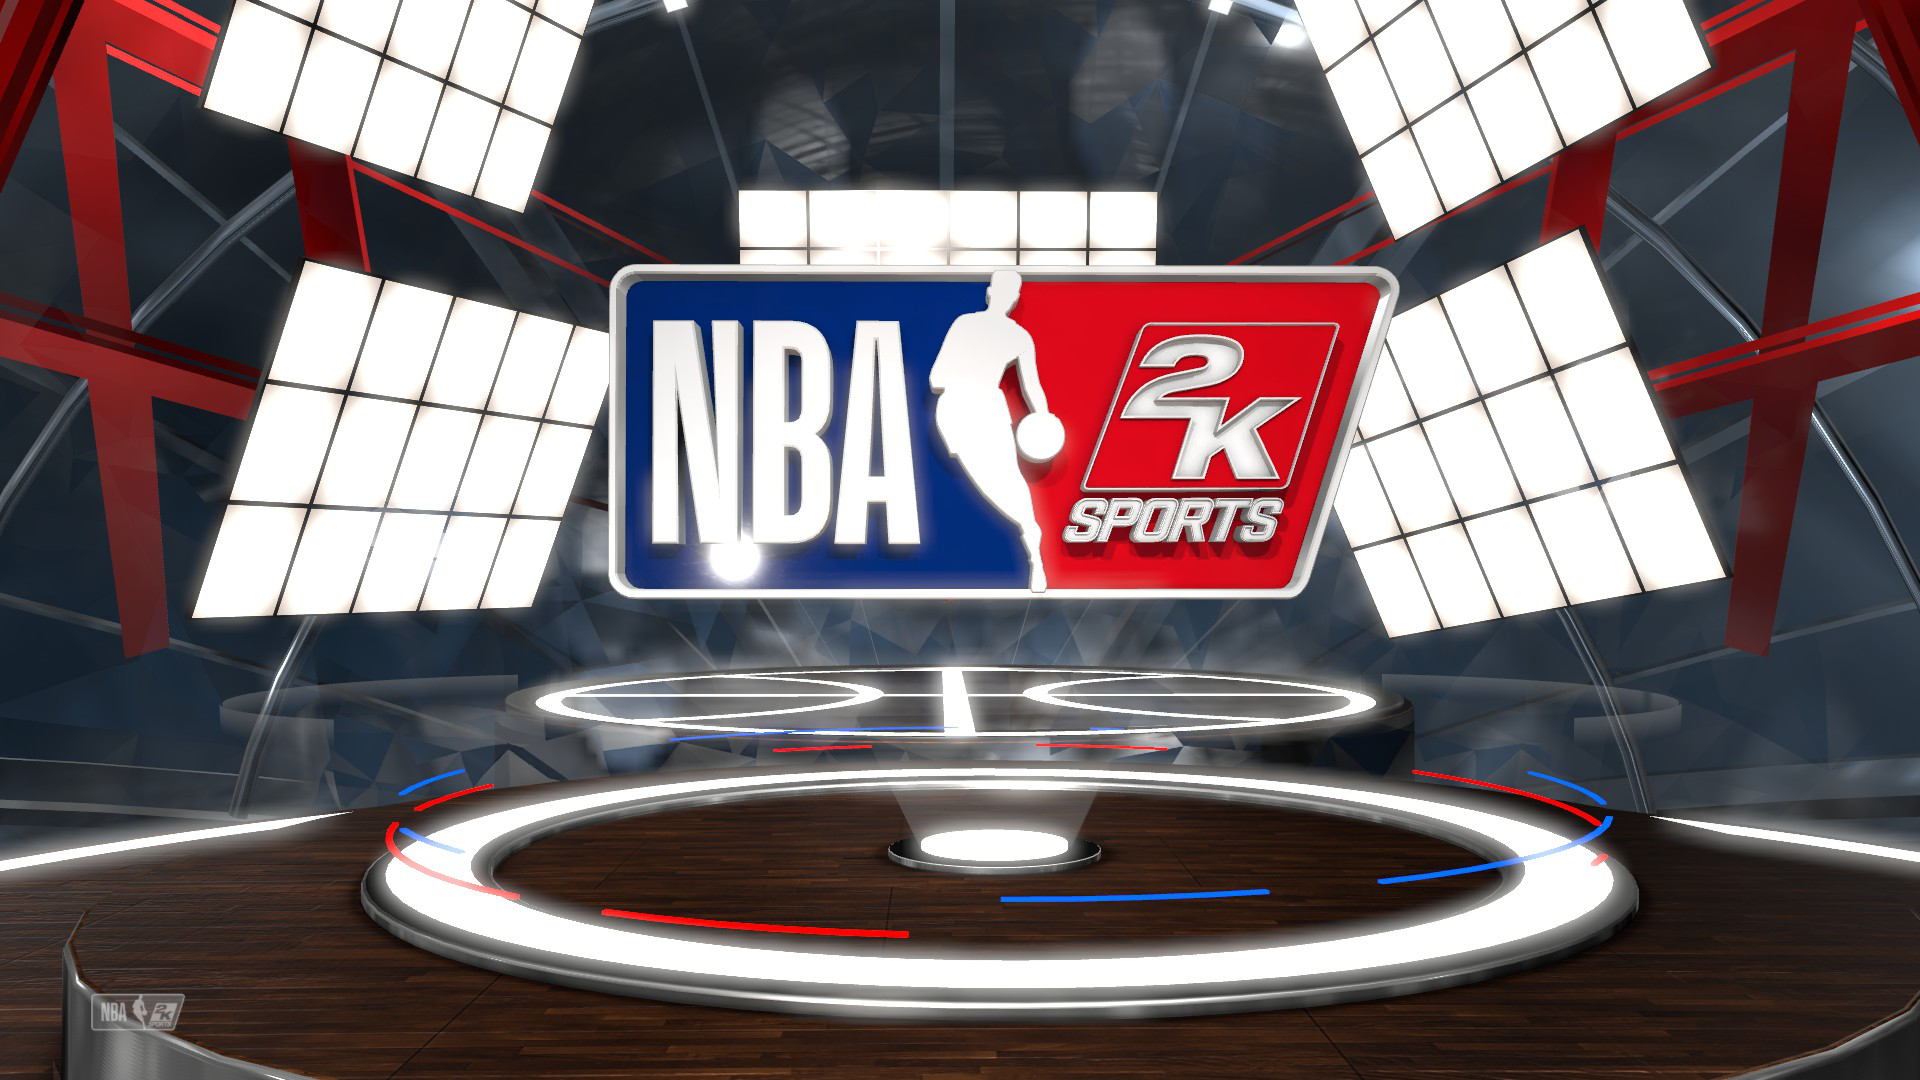 《NBA 2K19》现已全球上市 近20年来开发和创新的最高水准